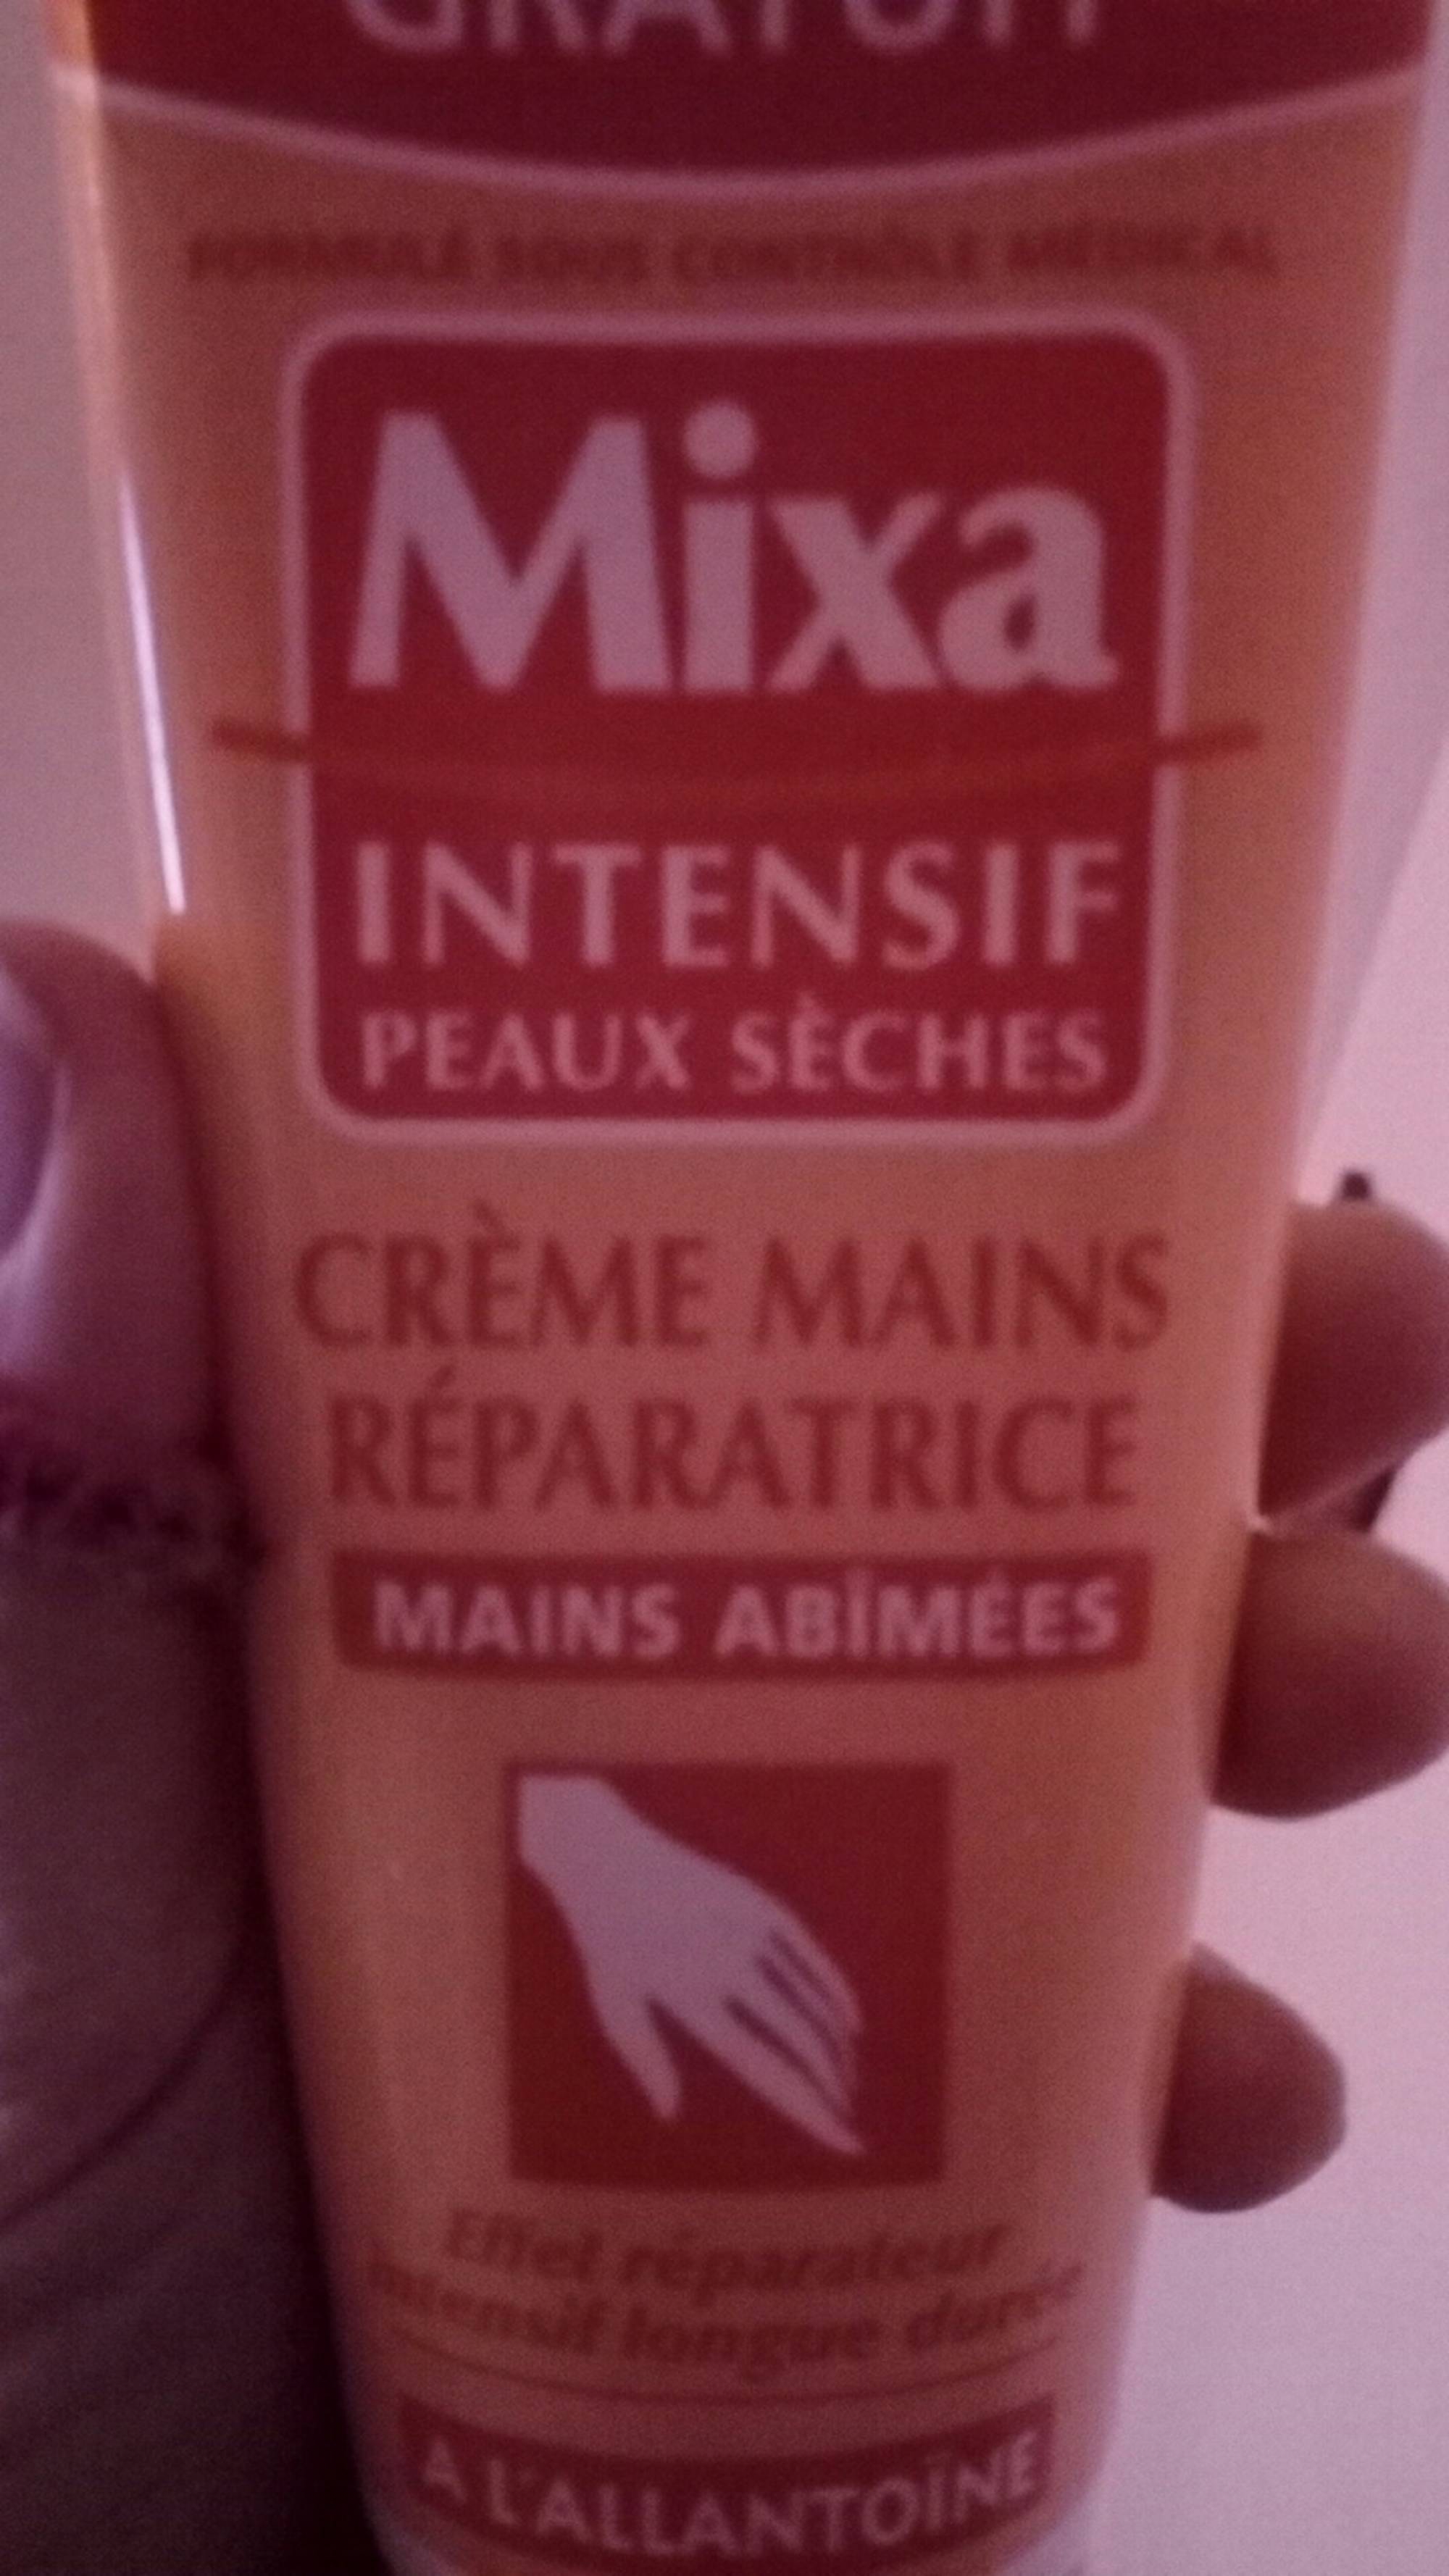 Crème Mains Réparatrice mains abîmées de Mixa